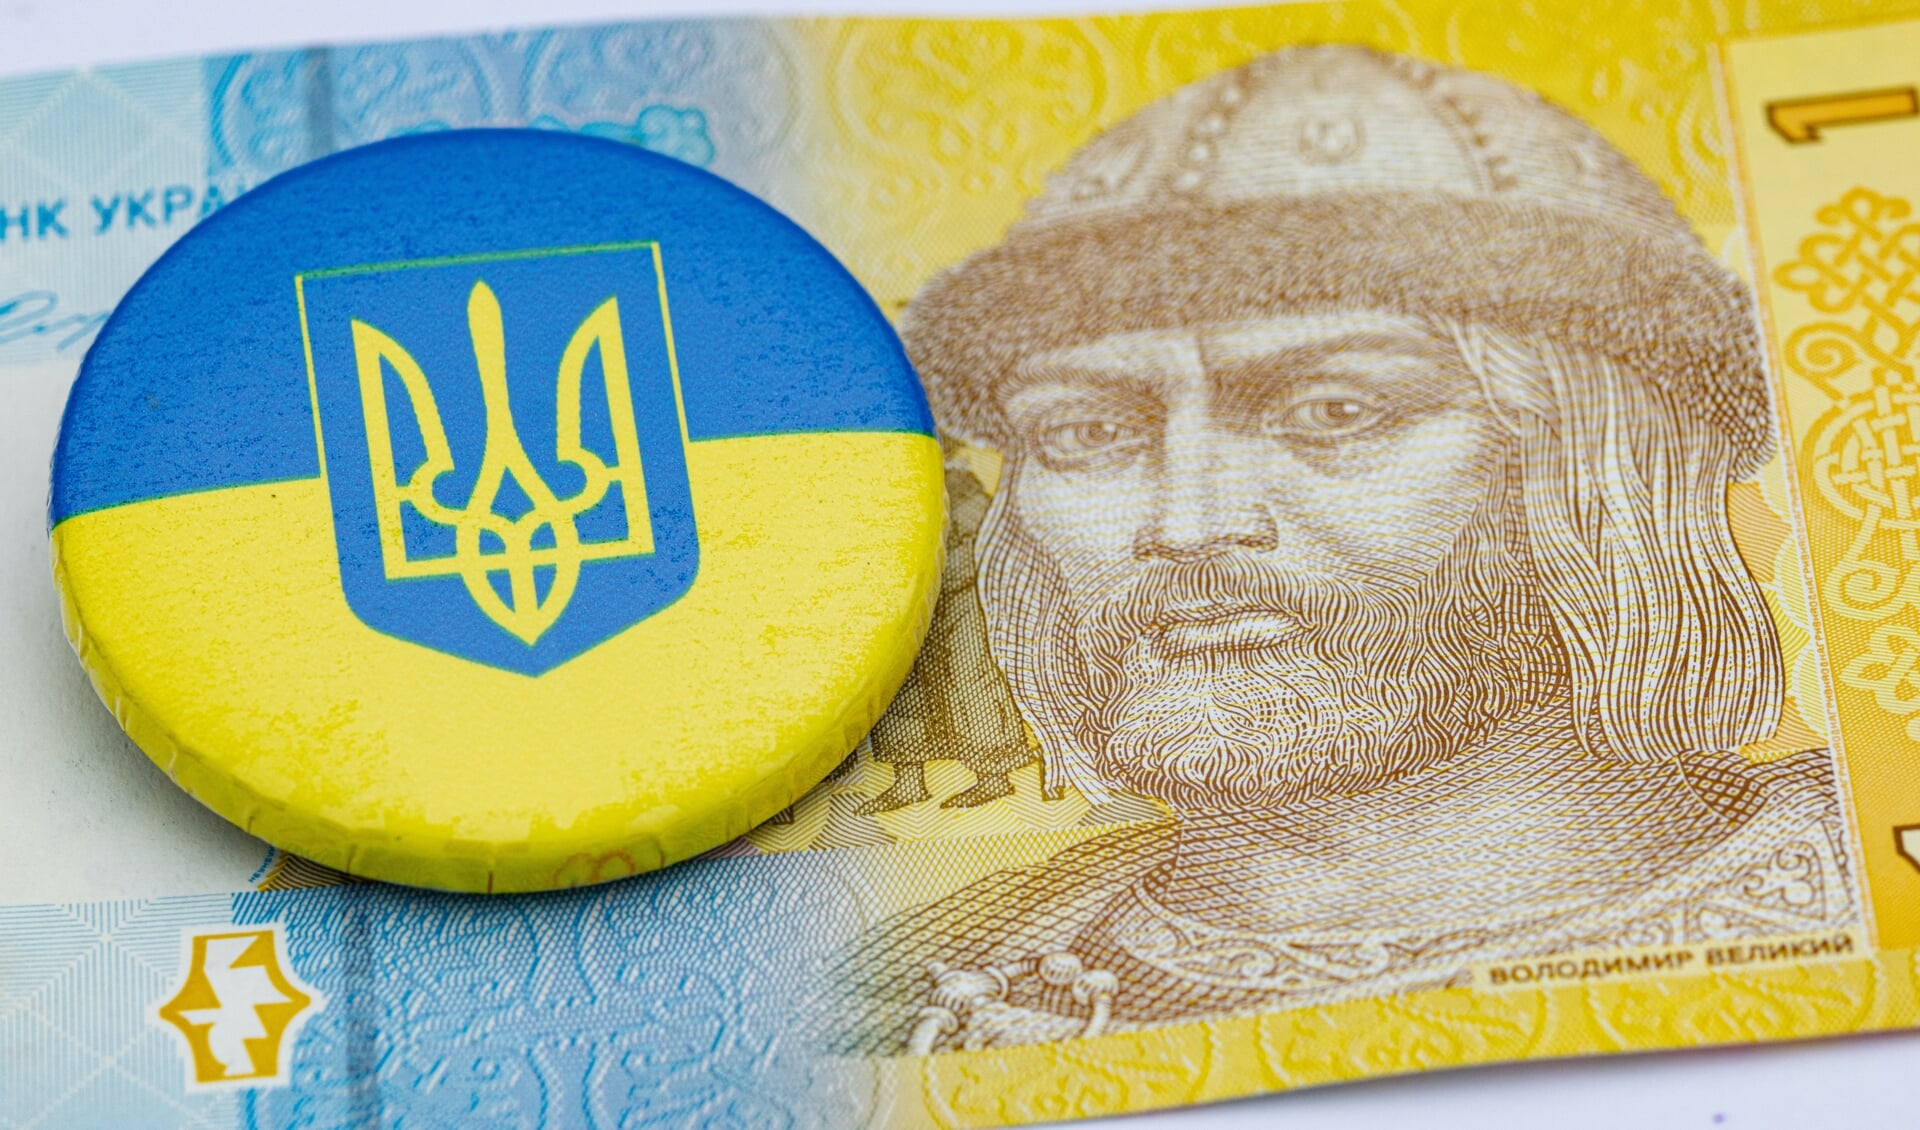 Vladimir van Kiev, afgebeeld op een Oekraïens bankbiljet.